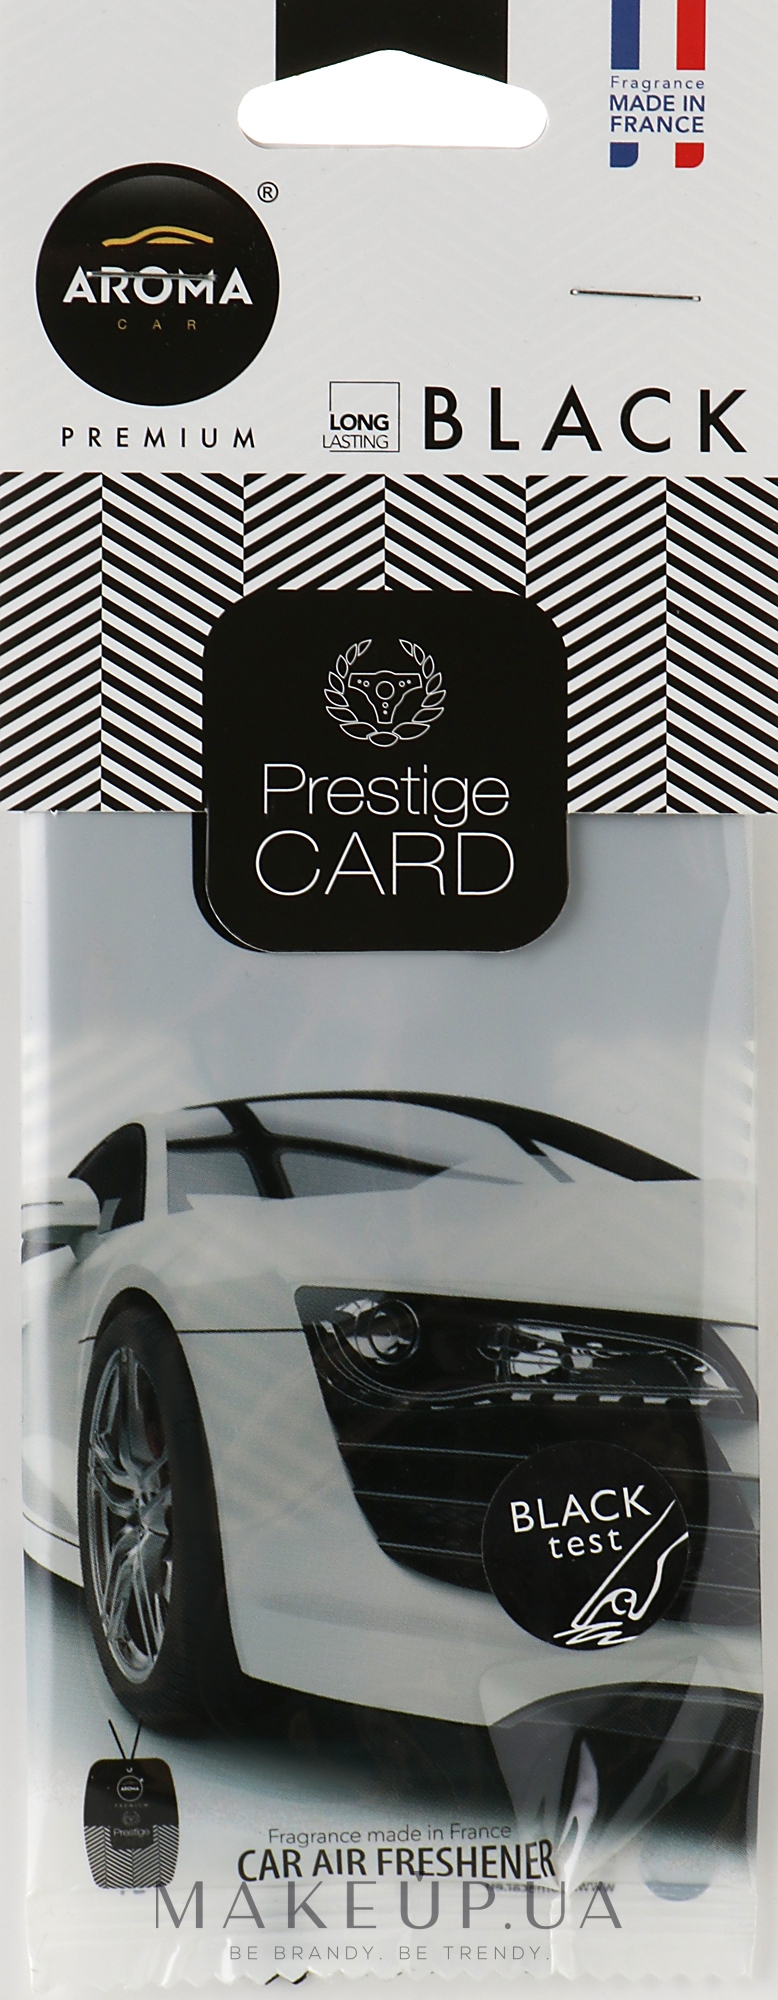 Ароматизатор с запахом целлюлозы "Black" для авто - Aroma Car Prestige Card — фото 6g